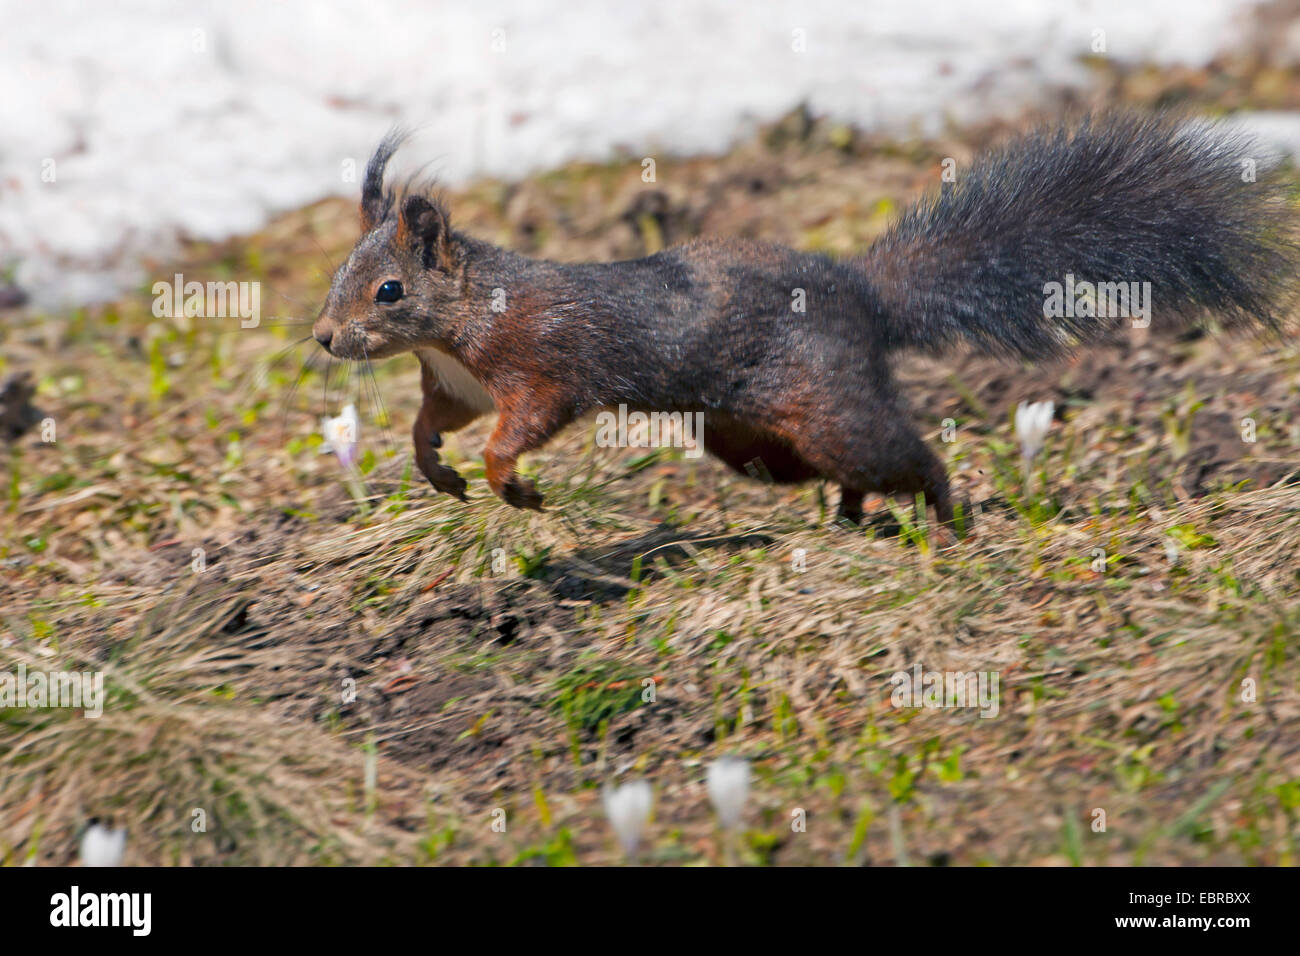 Unione scoiattolo rosso, Eurasian red scoiattolo (Sciurus vulgaris), saltare in un prato con fioriture di crochi, Svizzera dei Grigioni Foto Stock